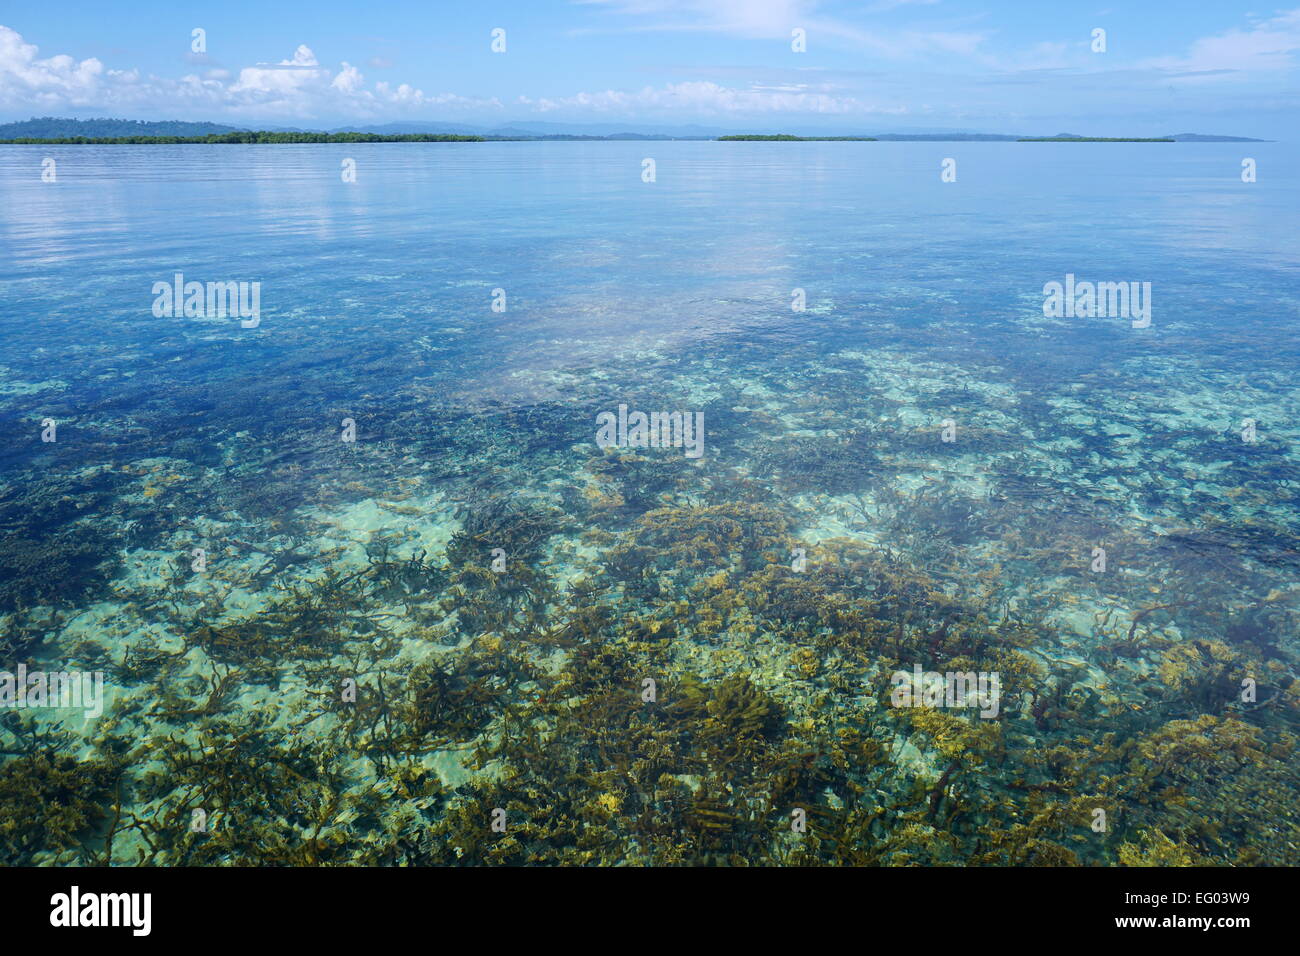 Calme et clair avec de l'eau ci-dessous des récifs coralliens et d'îles à la surface de la mer à l'horizon, des Caraïbes, Panama, Amérique Centrale Banque D'Images